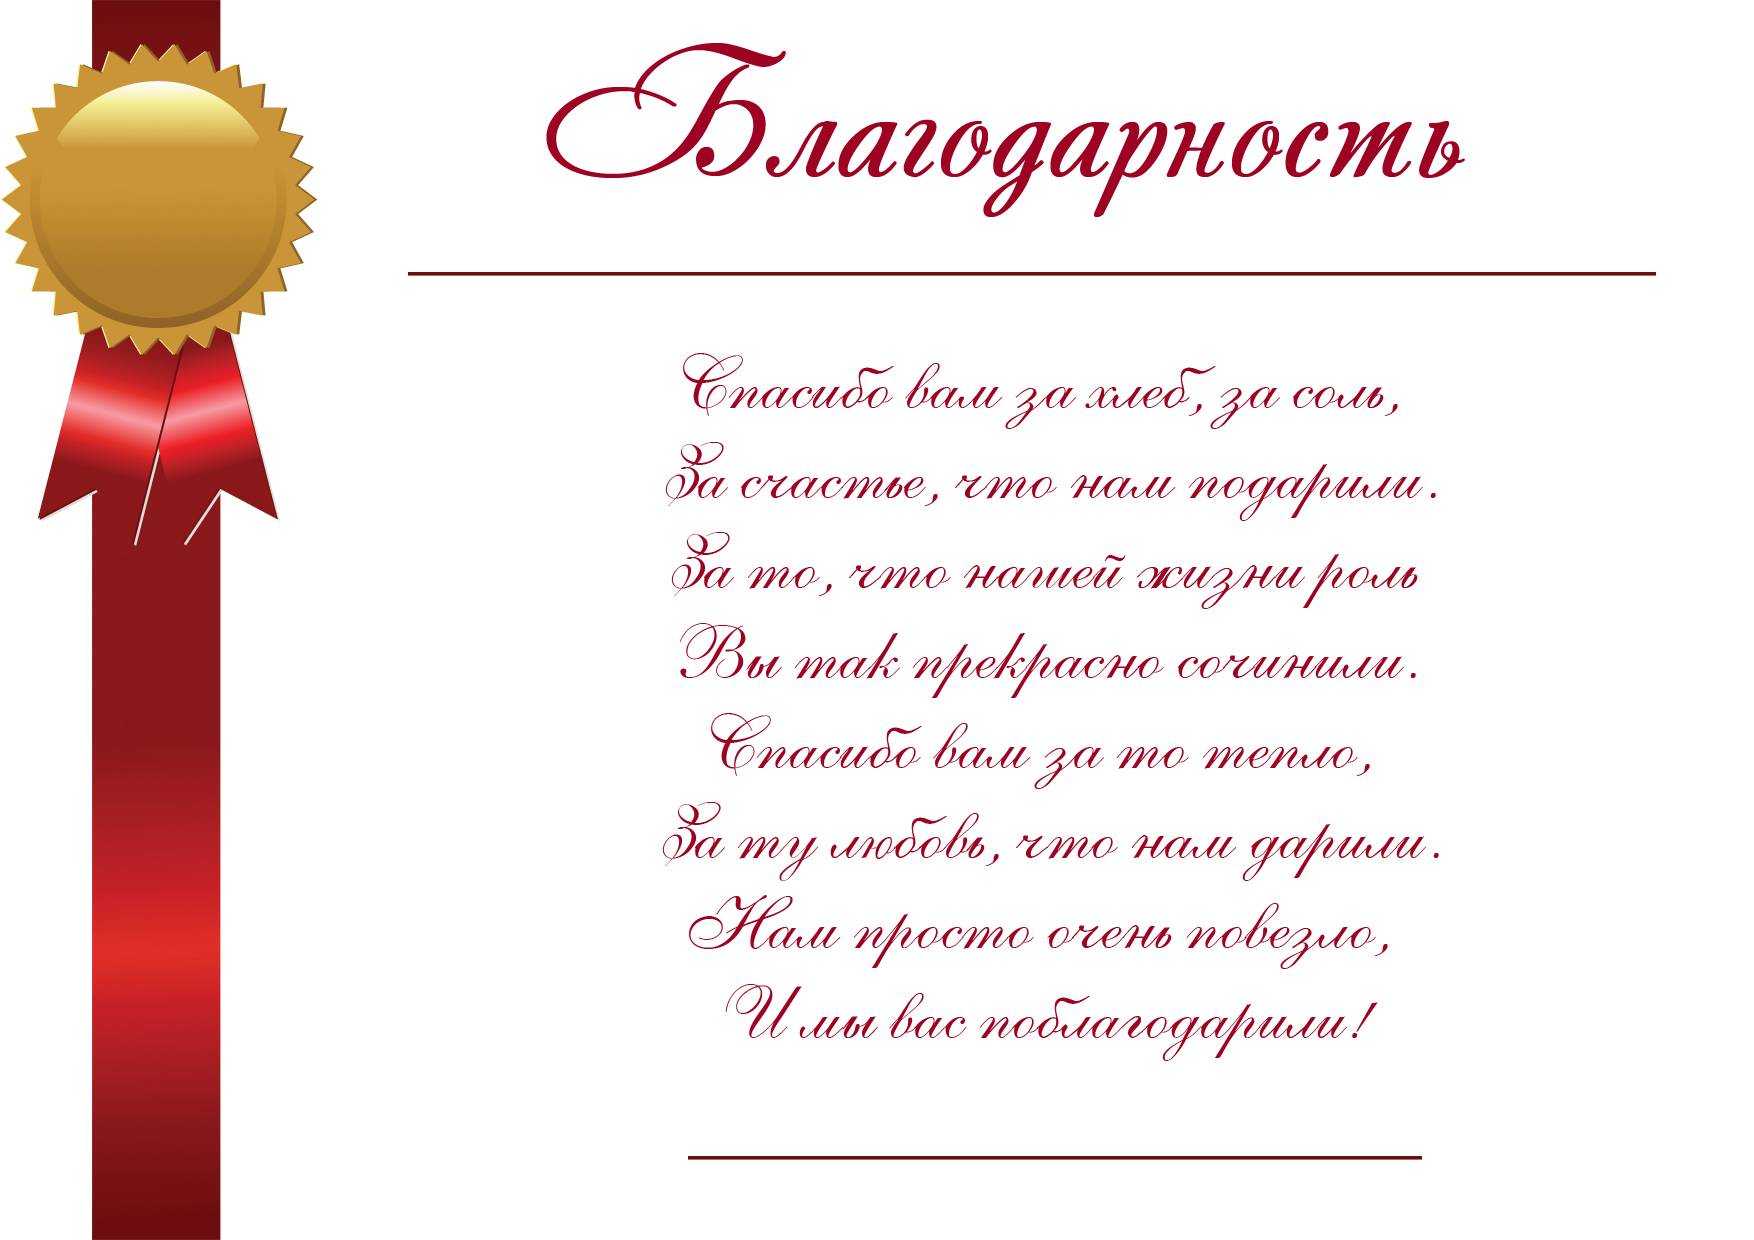 Ответная речь на поздравление коллегам по работе | pzdb.ru - поздравления на все случаи жизни